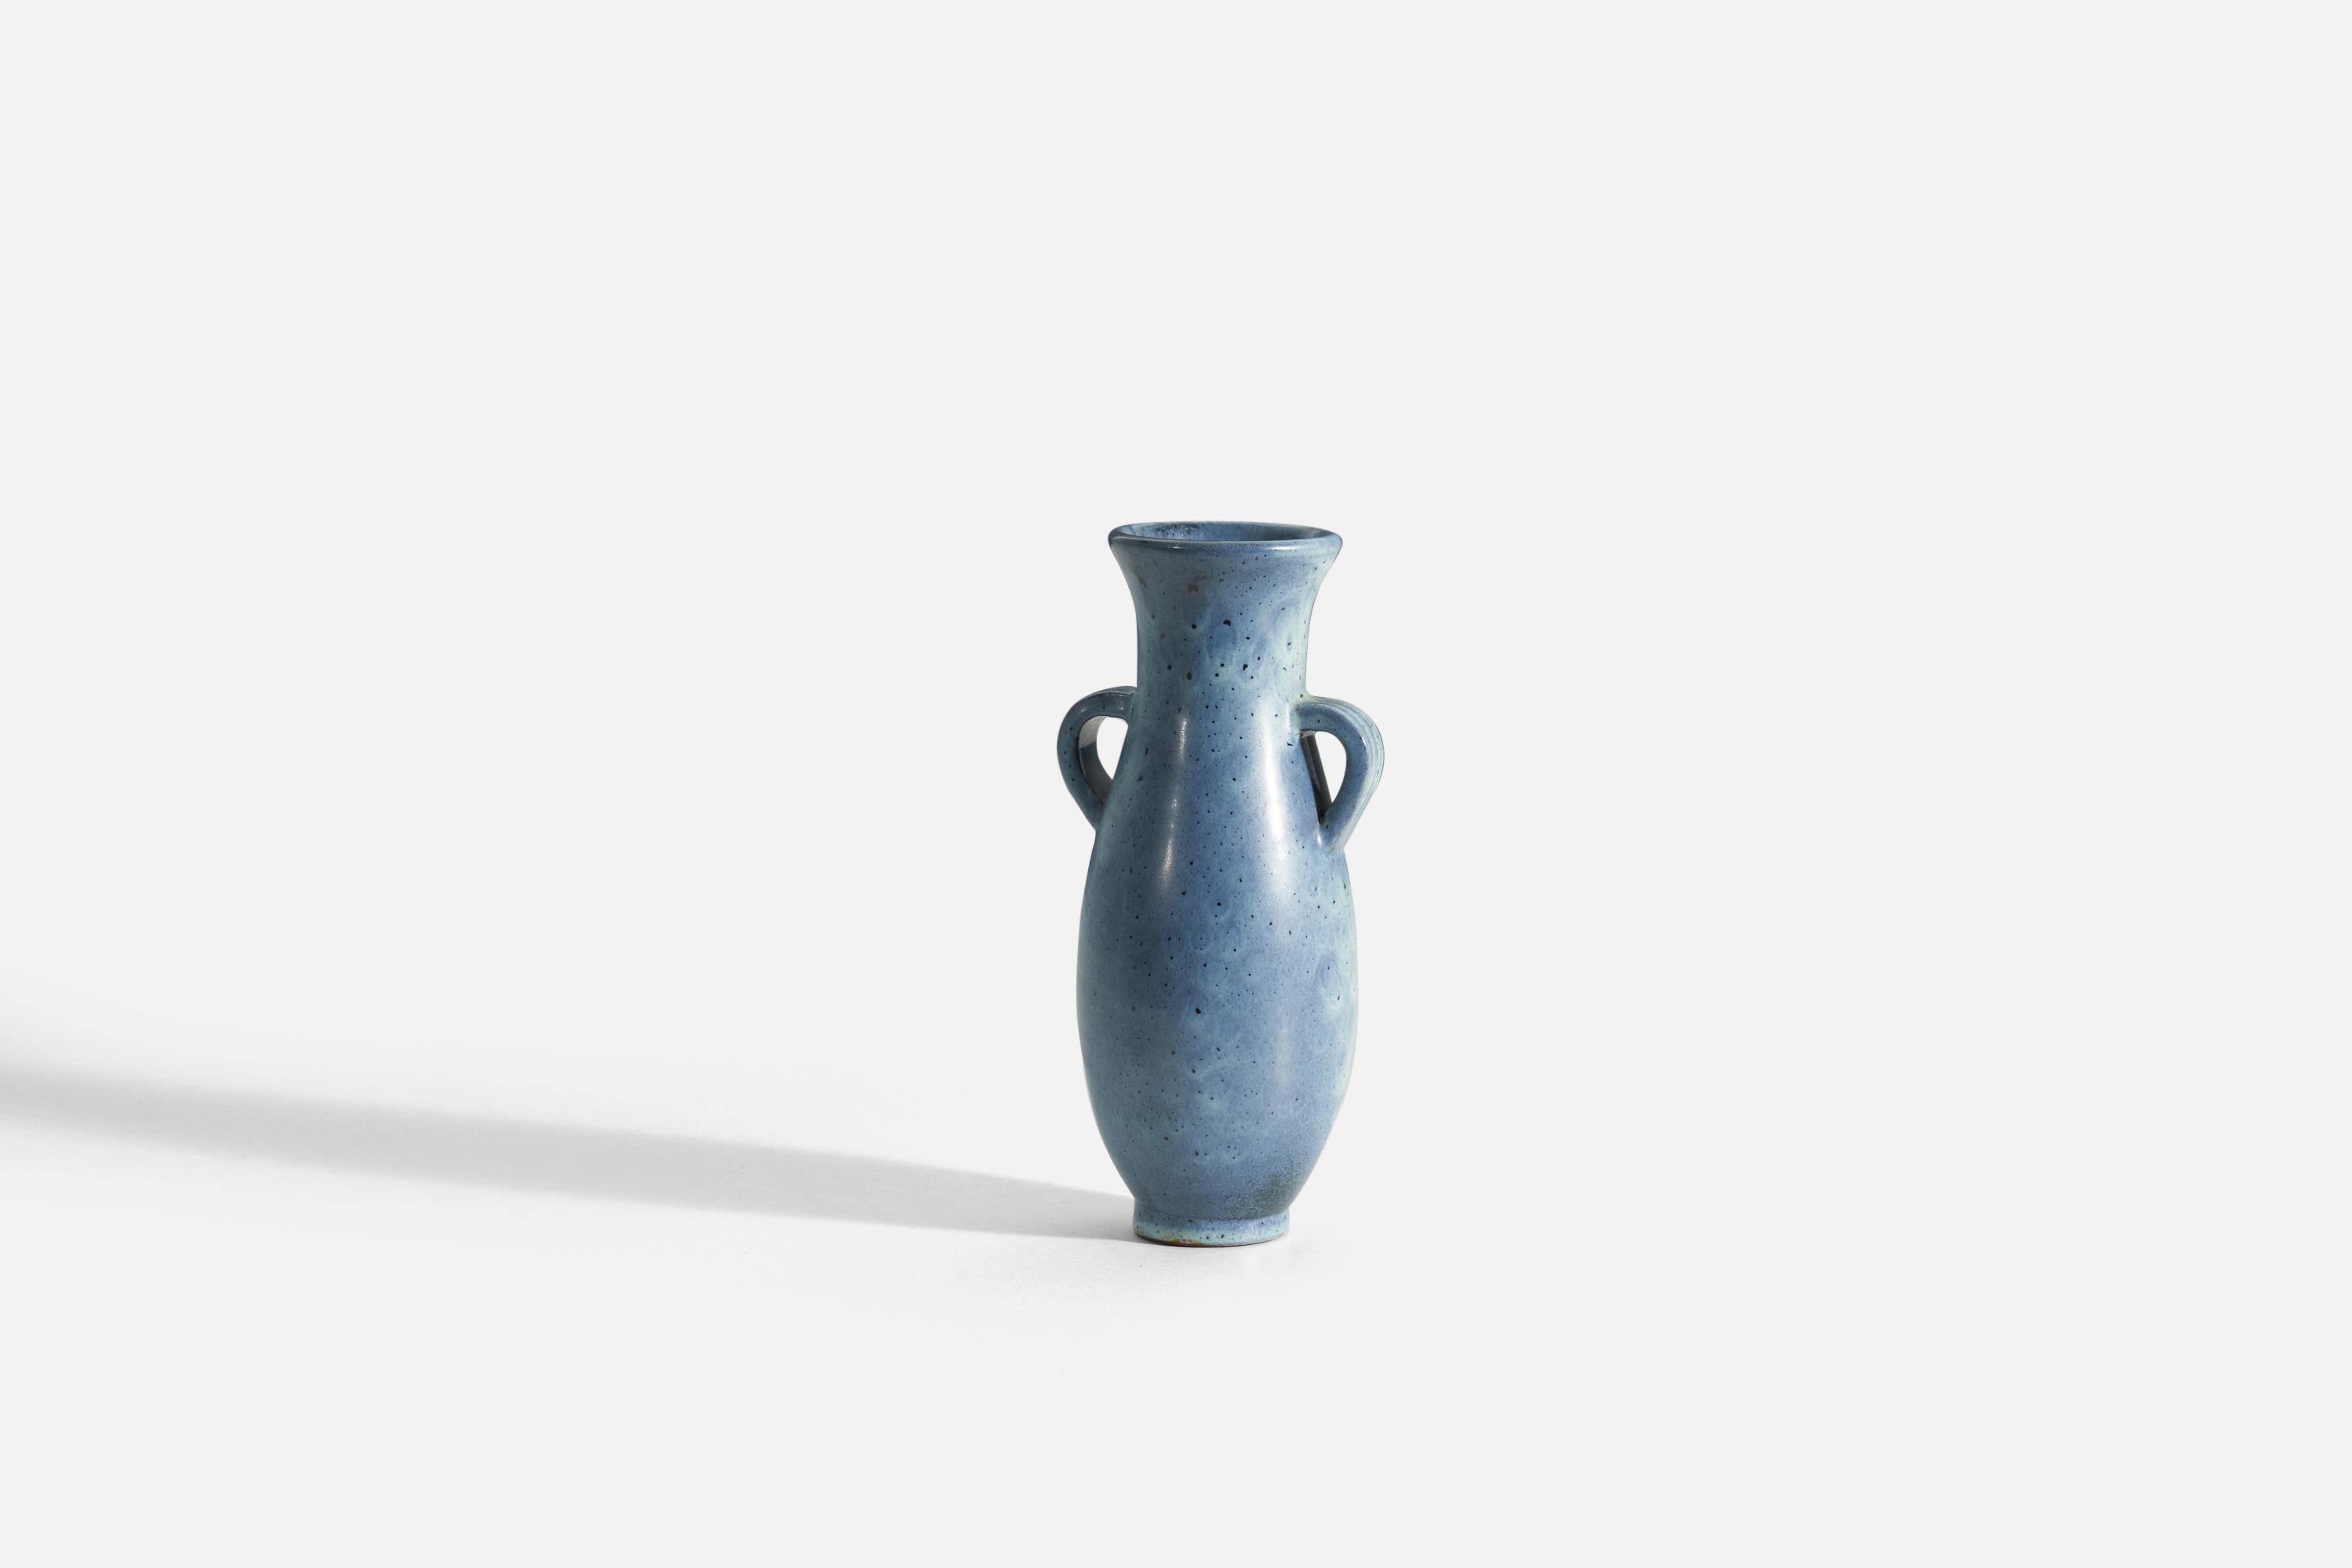 Un vase en faïence à glaçure bleue. Produit par Upsala-Ekeby, Suède, années 1940.

